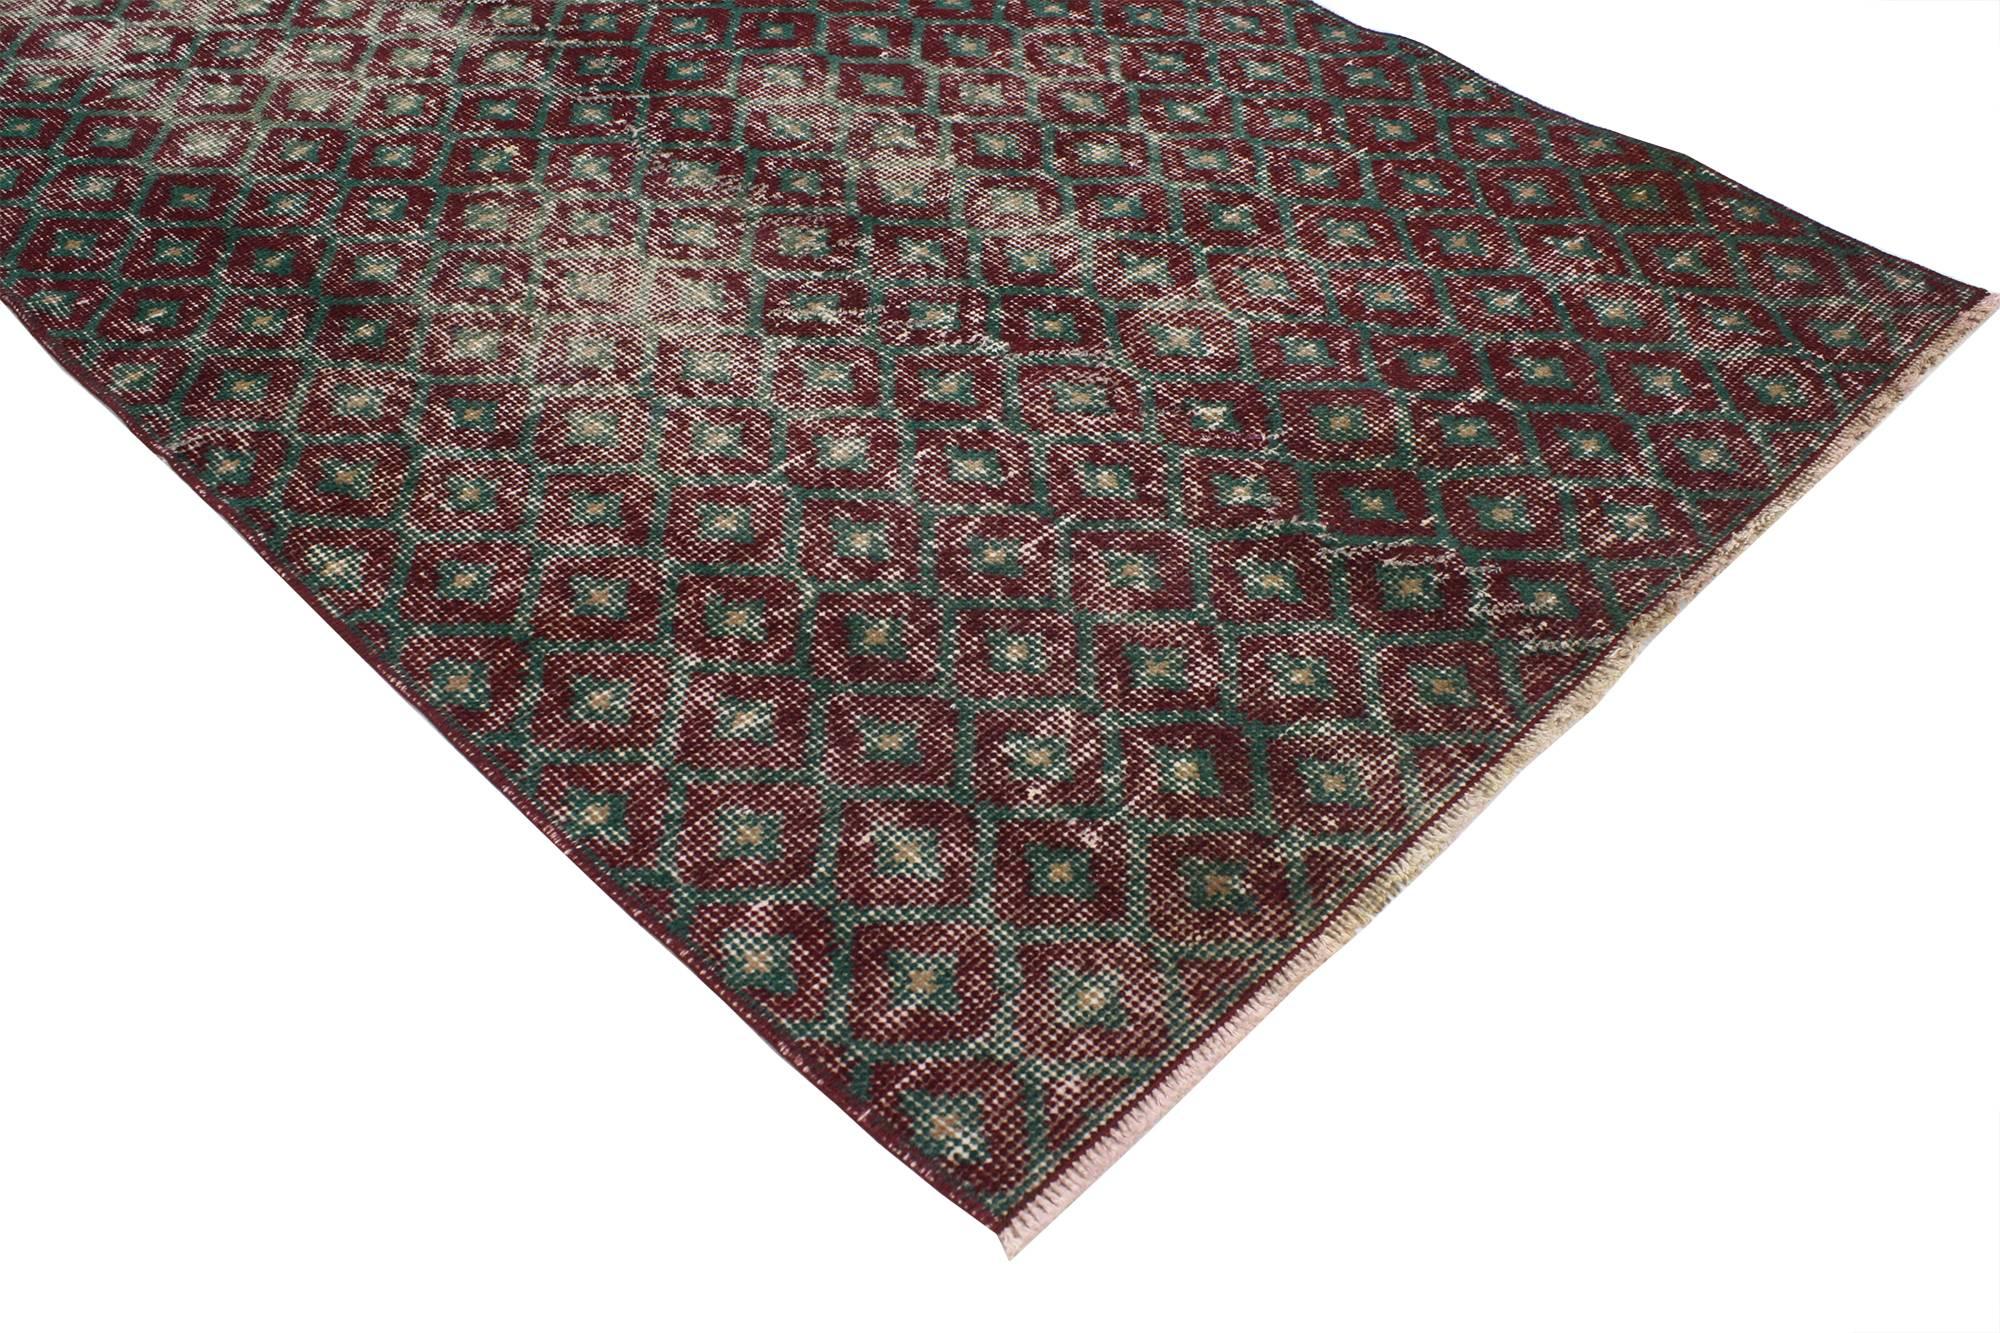 51915 Tapis Sivas turc vintage avec style traditionnel anglais moderne et rustique 02'09 x 06'00. Ce tapis turc vintage Sivas, noué à la main et en mauvais état, présente un motif graphique de losanges en treillis sur un champ abrasif. Des rangées